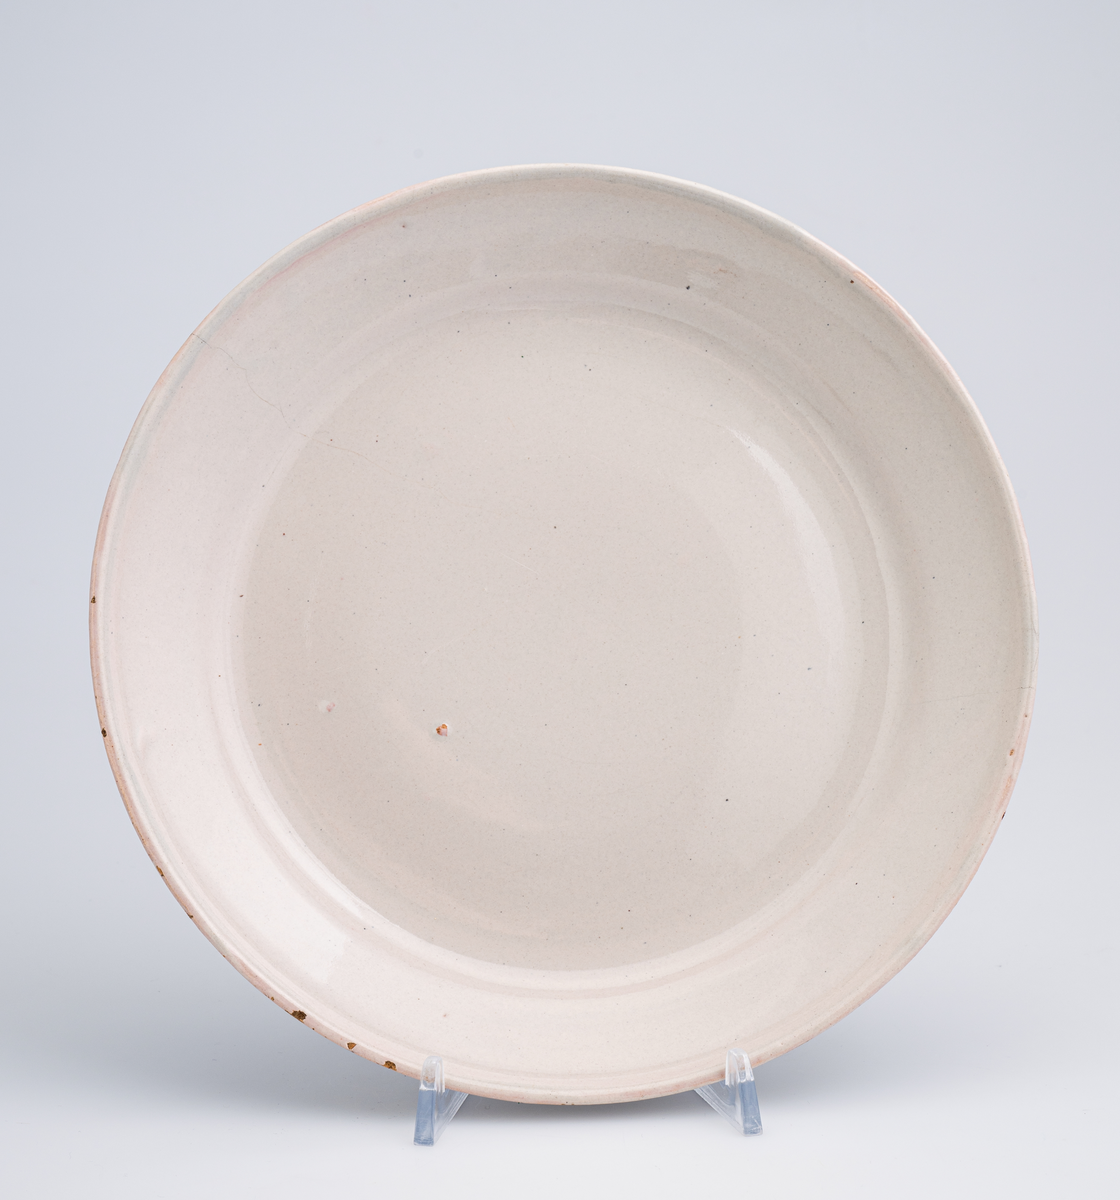 En flat tallerken av keramikk/porselen. Den har bly- og tinnglasur og er hvit på farge. Tallerkenen er rund med en relativt høy og skrånende kant. Den har ikke dekor utover glasuren. Tallerkenen er en av 11 identiske tallerkener som trolig er fra tidlig på 1700-tallet.
